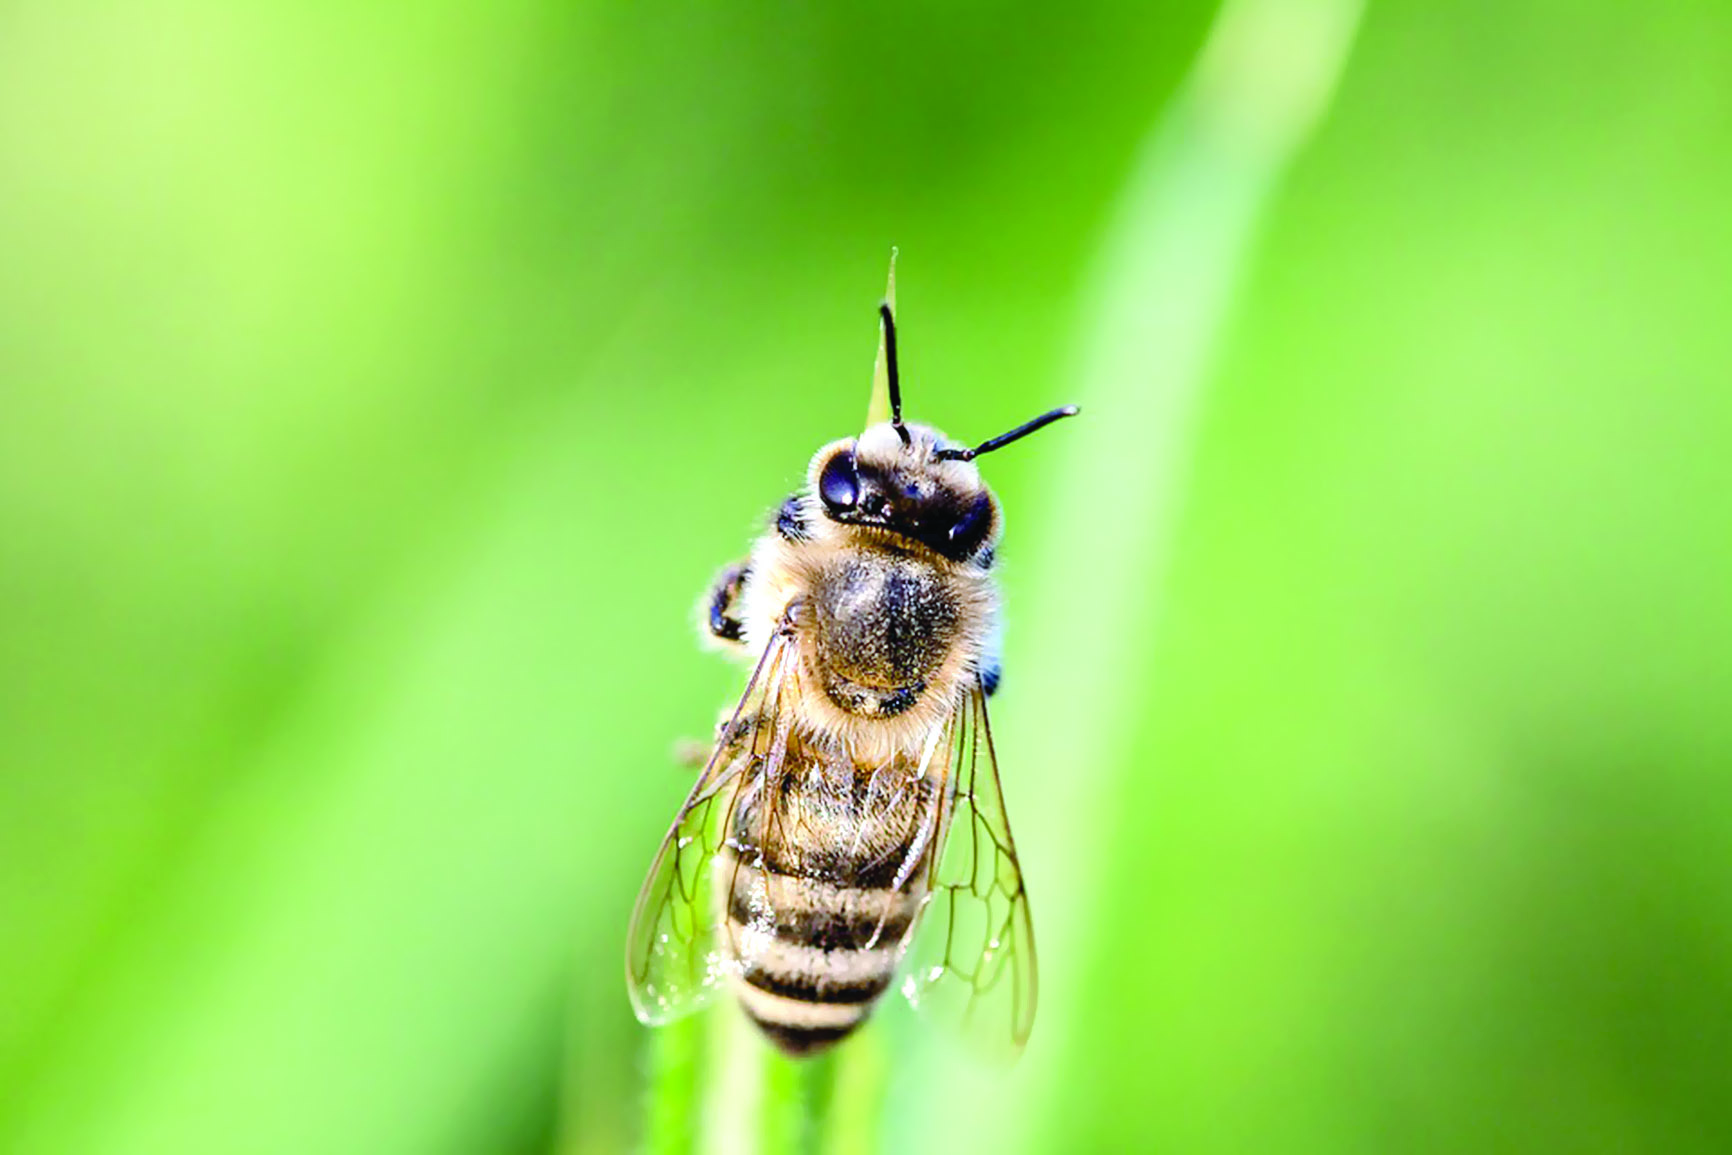 سم النحل

أحدث طريقة فعالة لعلاج الأكزيما